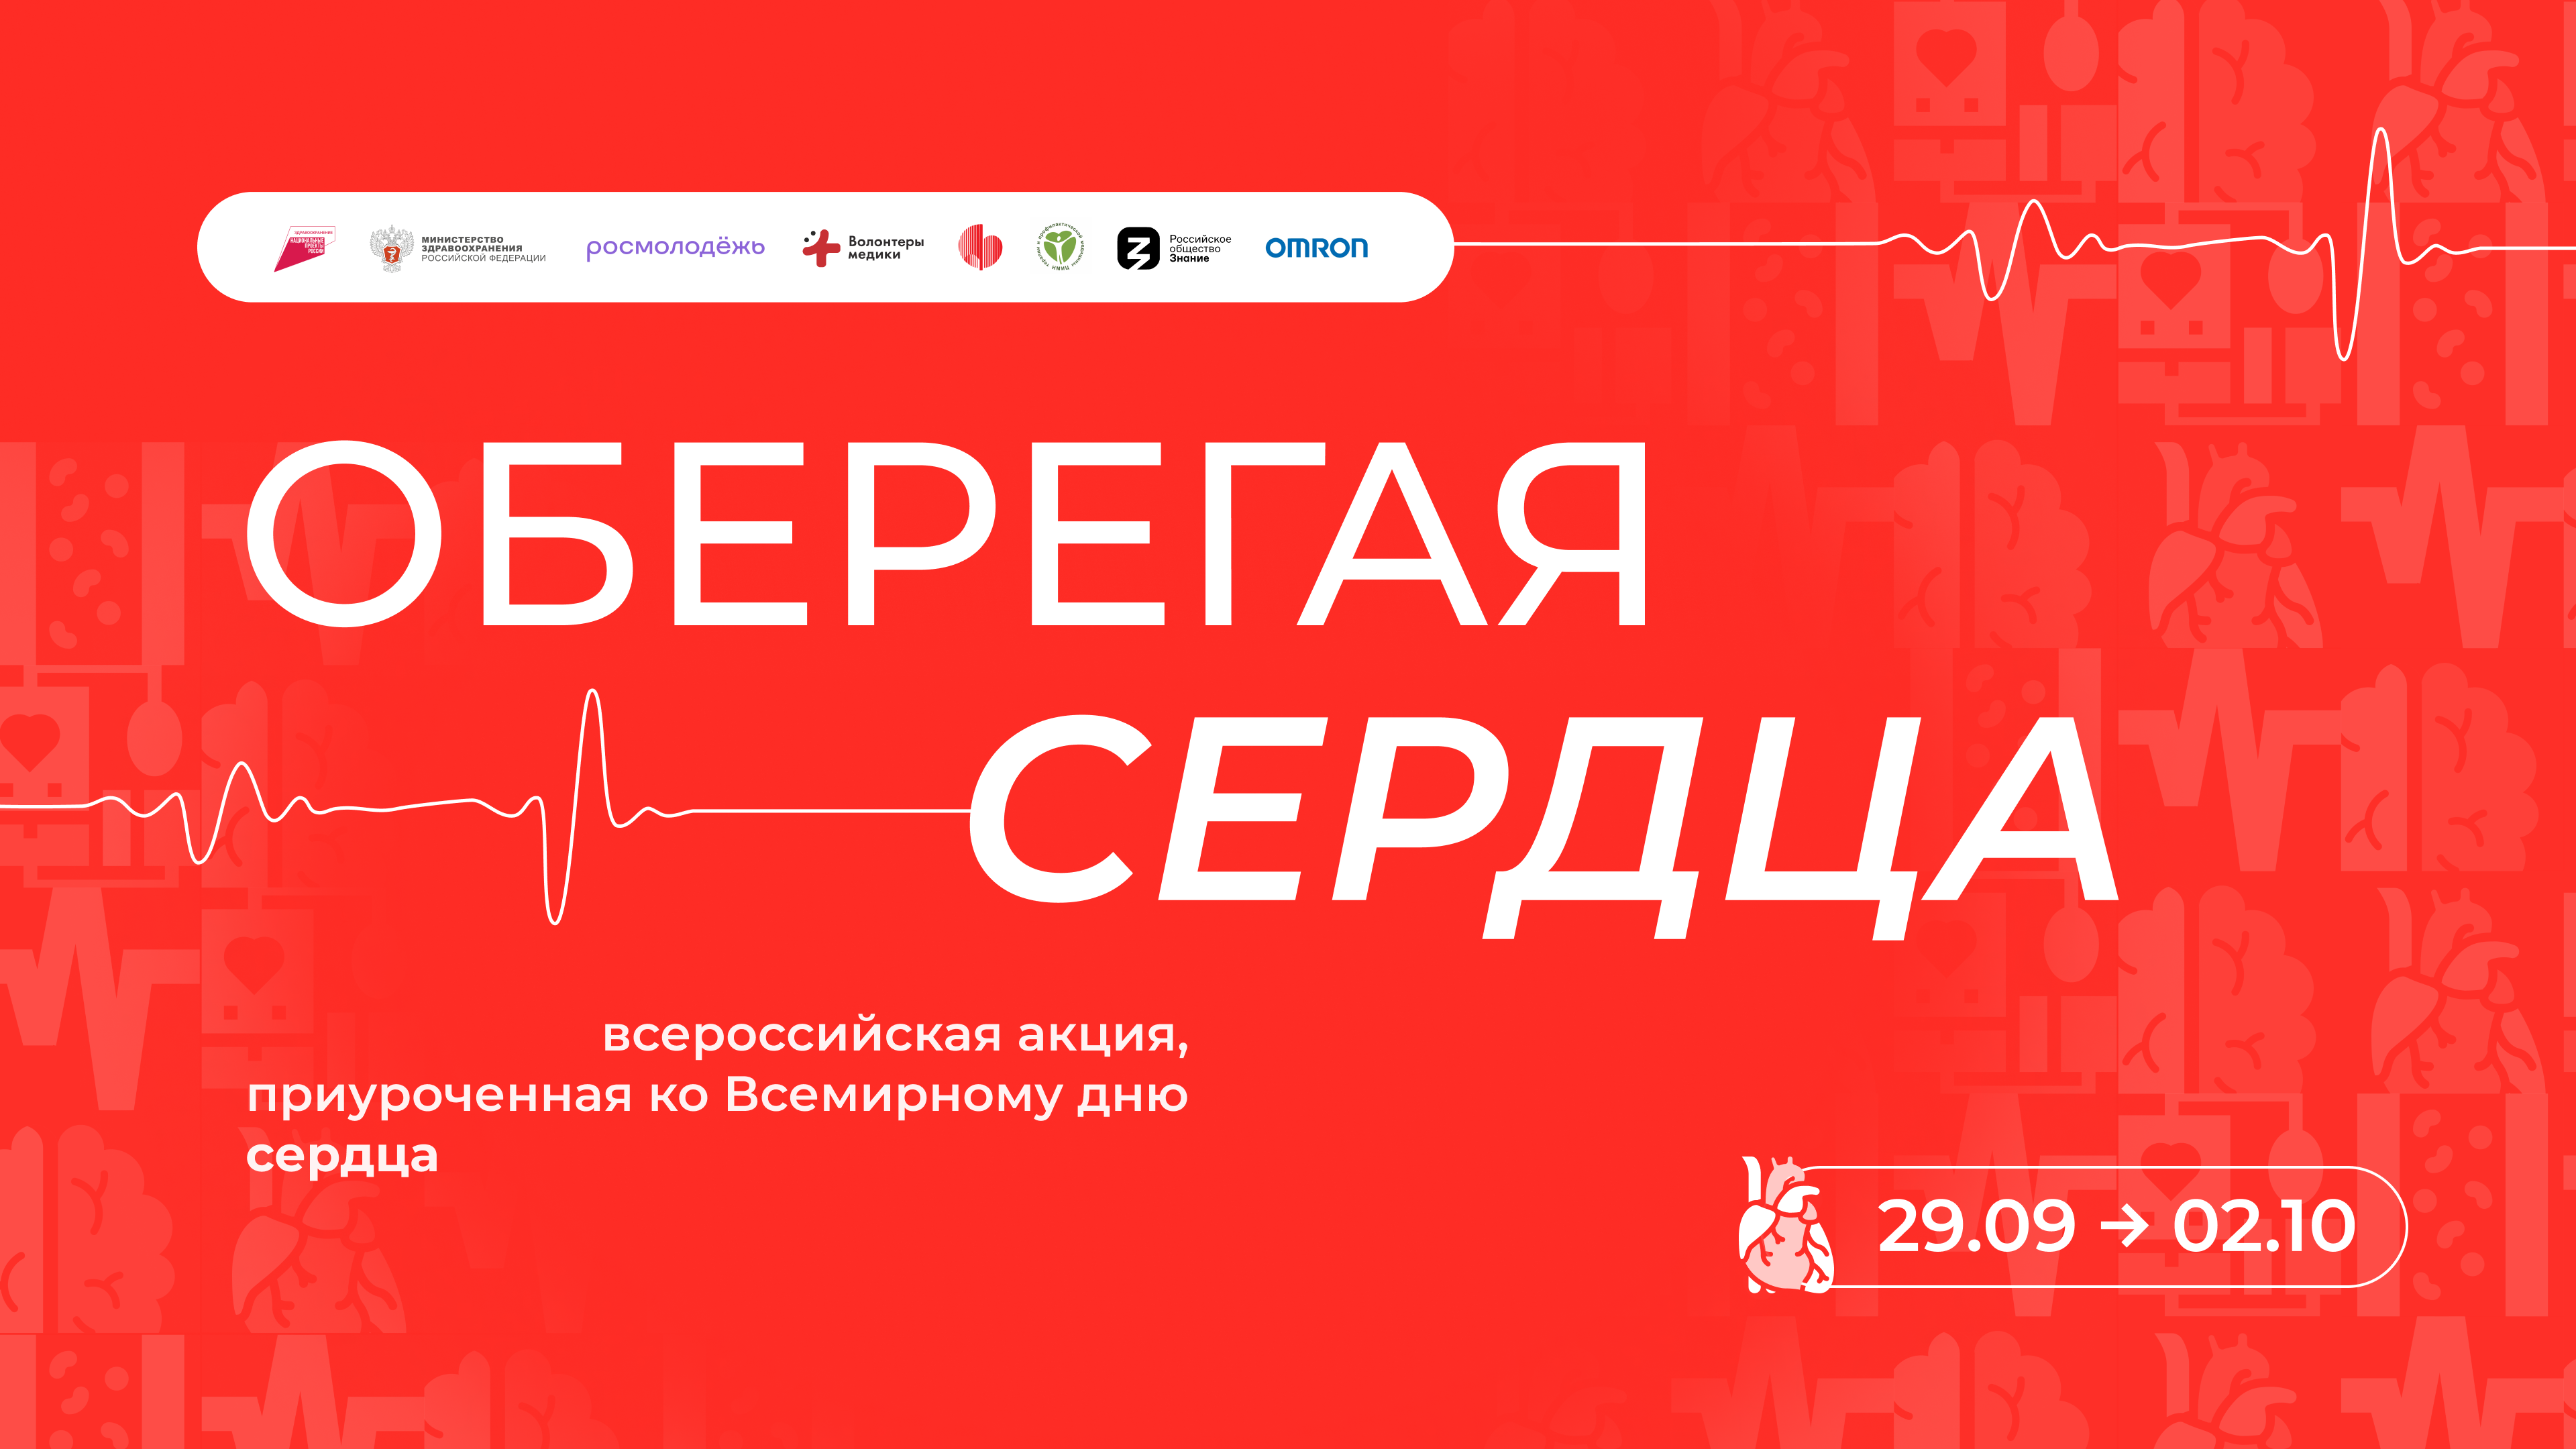 Волонтеры-медики проведут Всероссийскую акцию «Оберегая сердца»